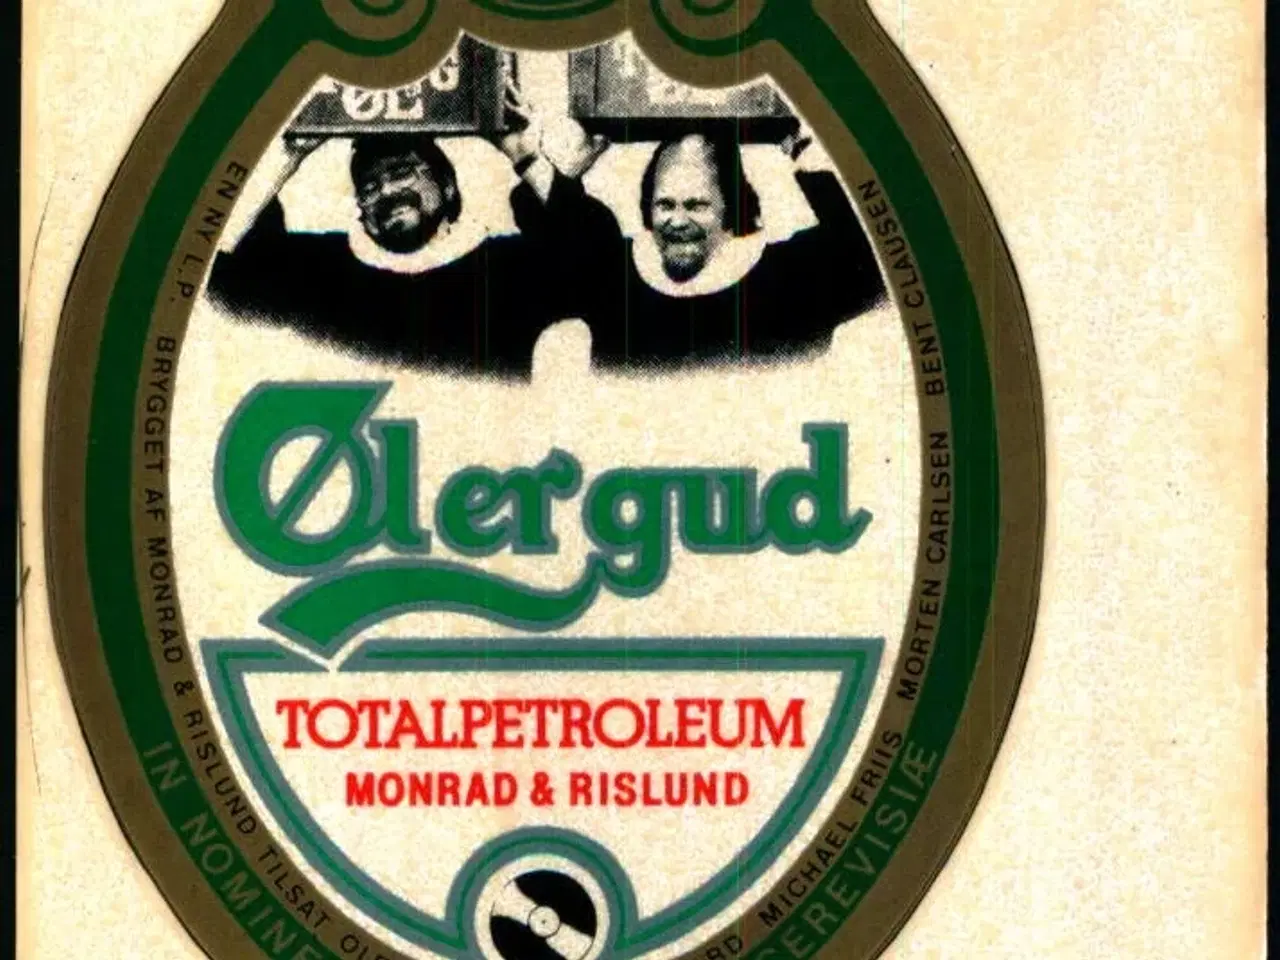 Billede 1 - Øl er gud - Selvklæbende etiket fra Totalpetroleum